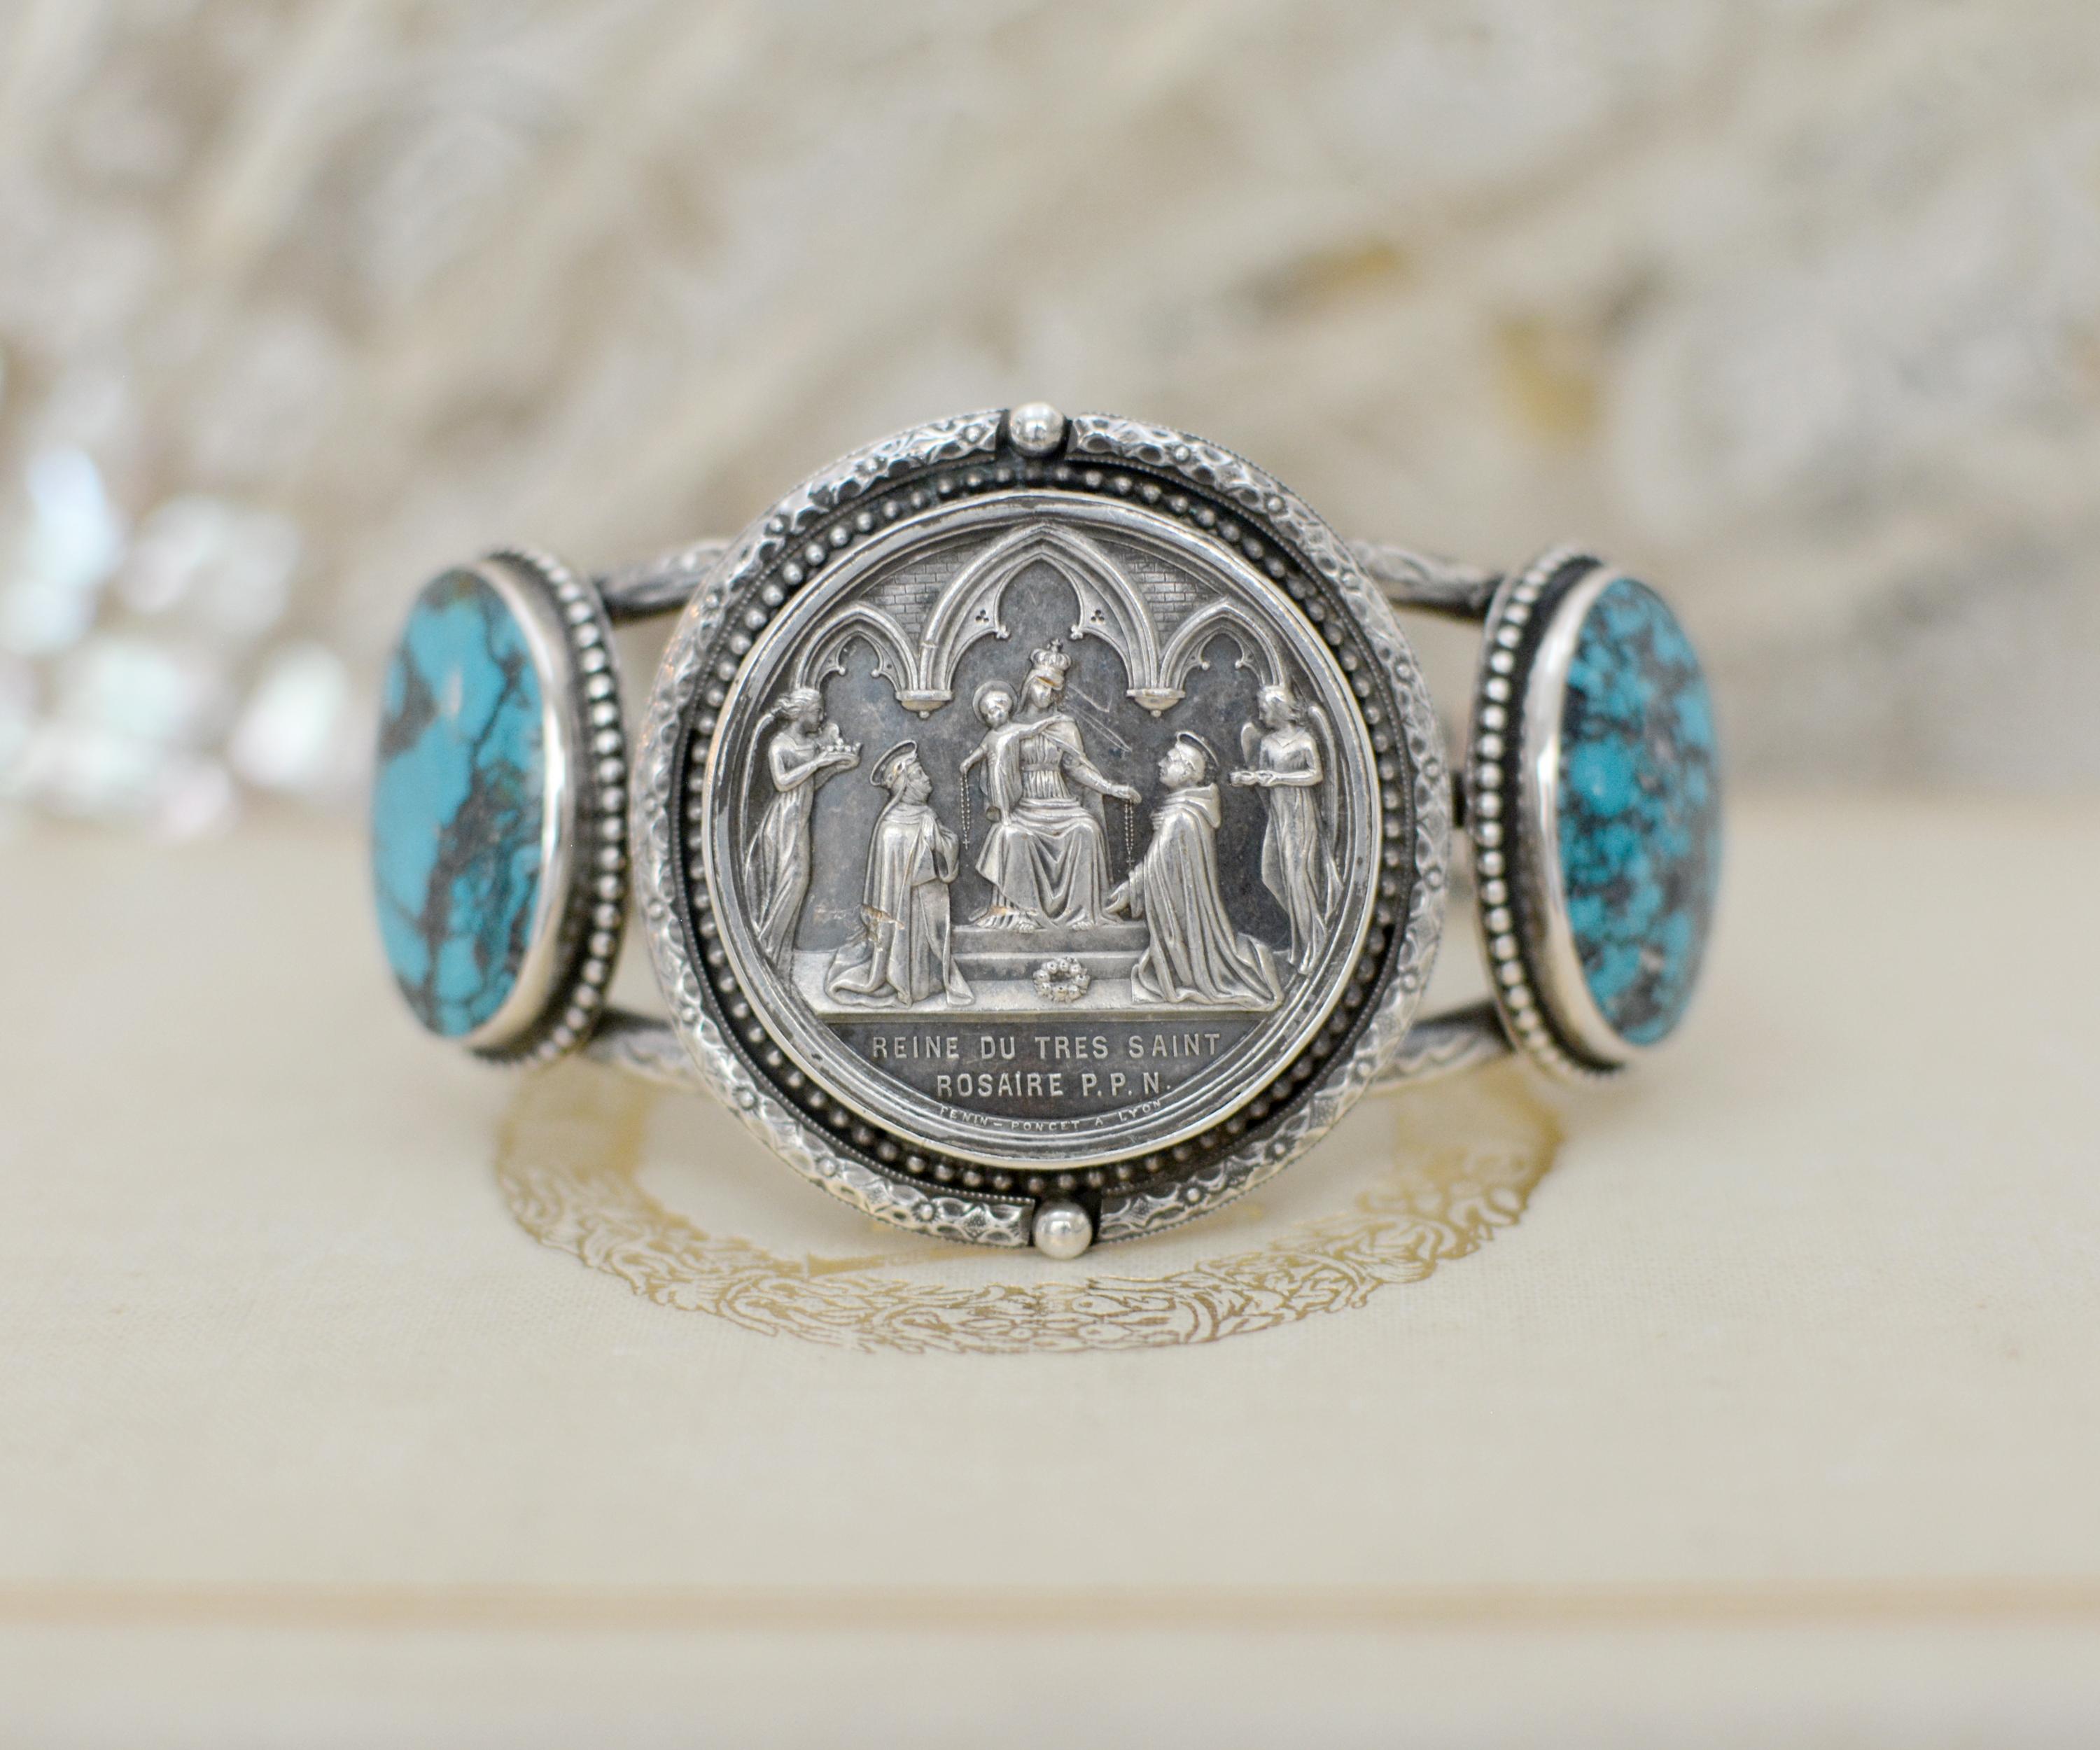 Ce bracelet en argent sterling unique en son genre est orné d'une médaille de mariage française originale datant du XIXe siècle, représentant la mère Marie avec l'enfant Jésus à ses côtés. Sous le couple agenouillé figurent les mots : 